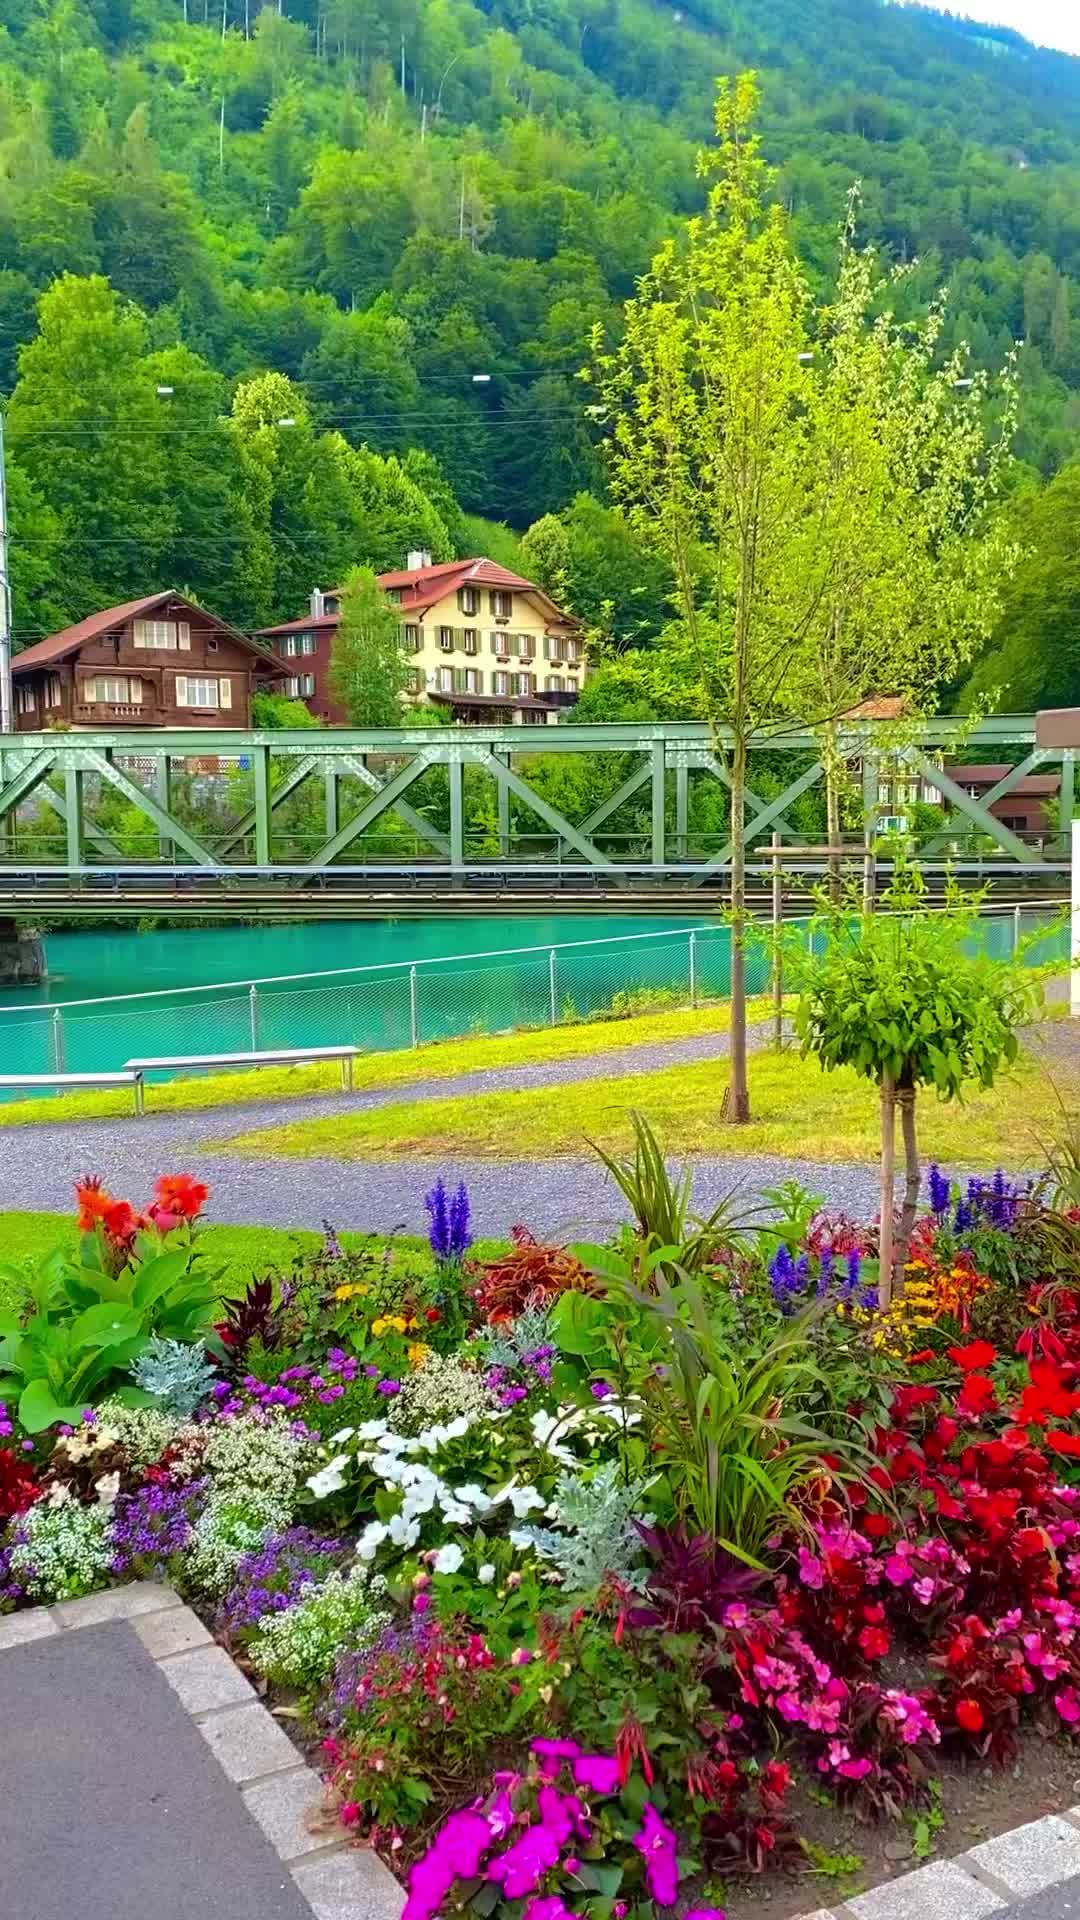 Discover Interlaken's Summer Flower Paradise